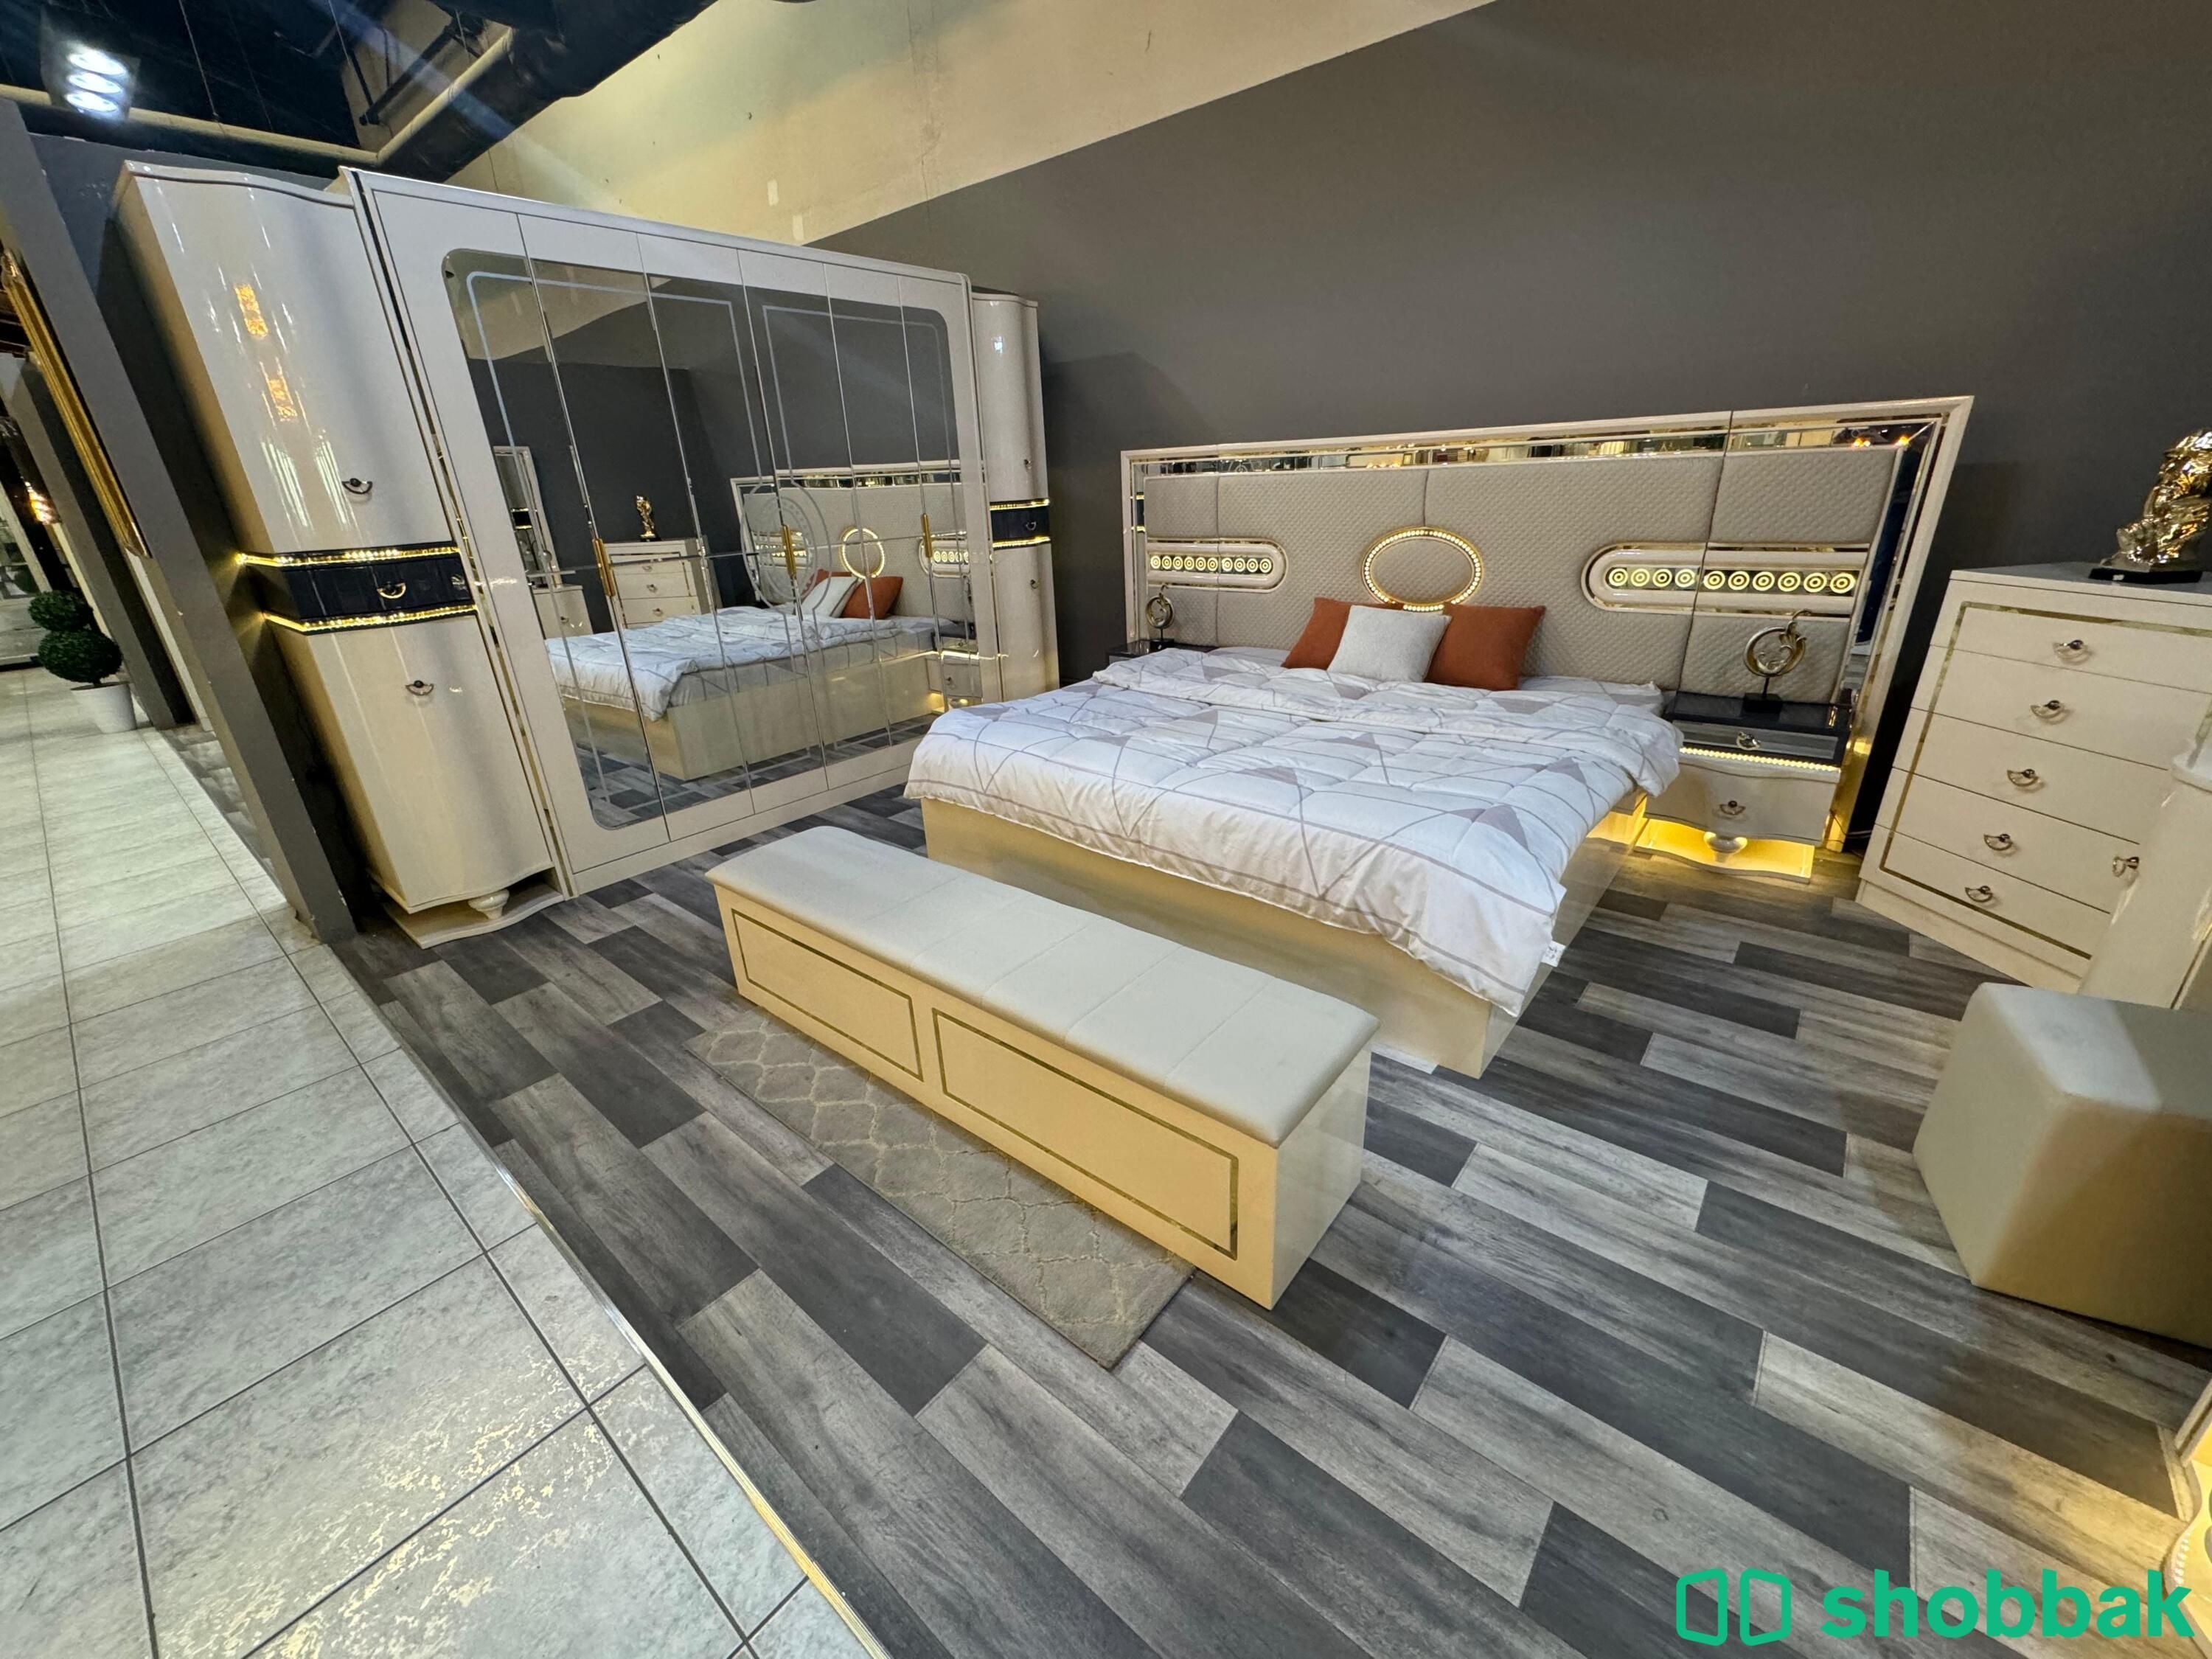 غرفة نوم جديدة بتصميم مميز Shobbak Saudi Arabia